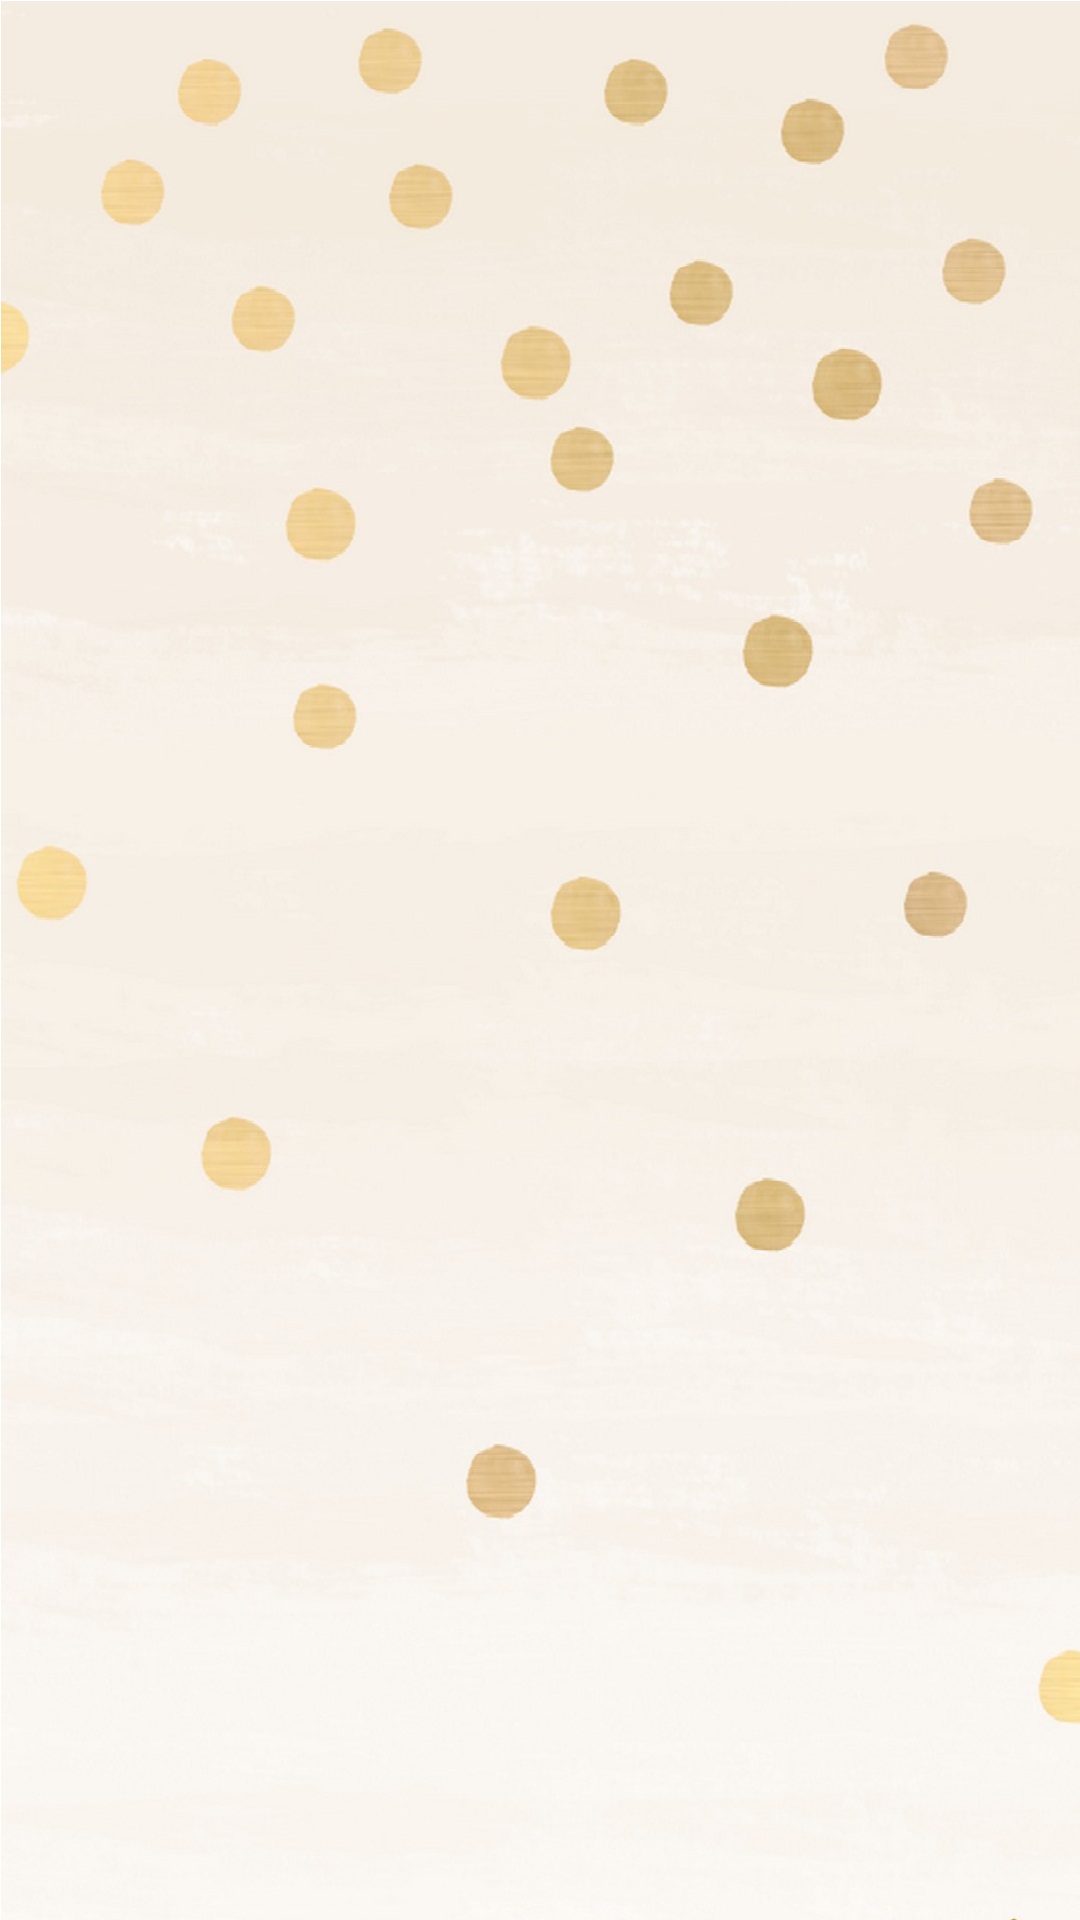 gold theme wallpaper,white,pattern,polka dot,beige,yellow